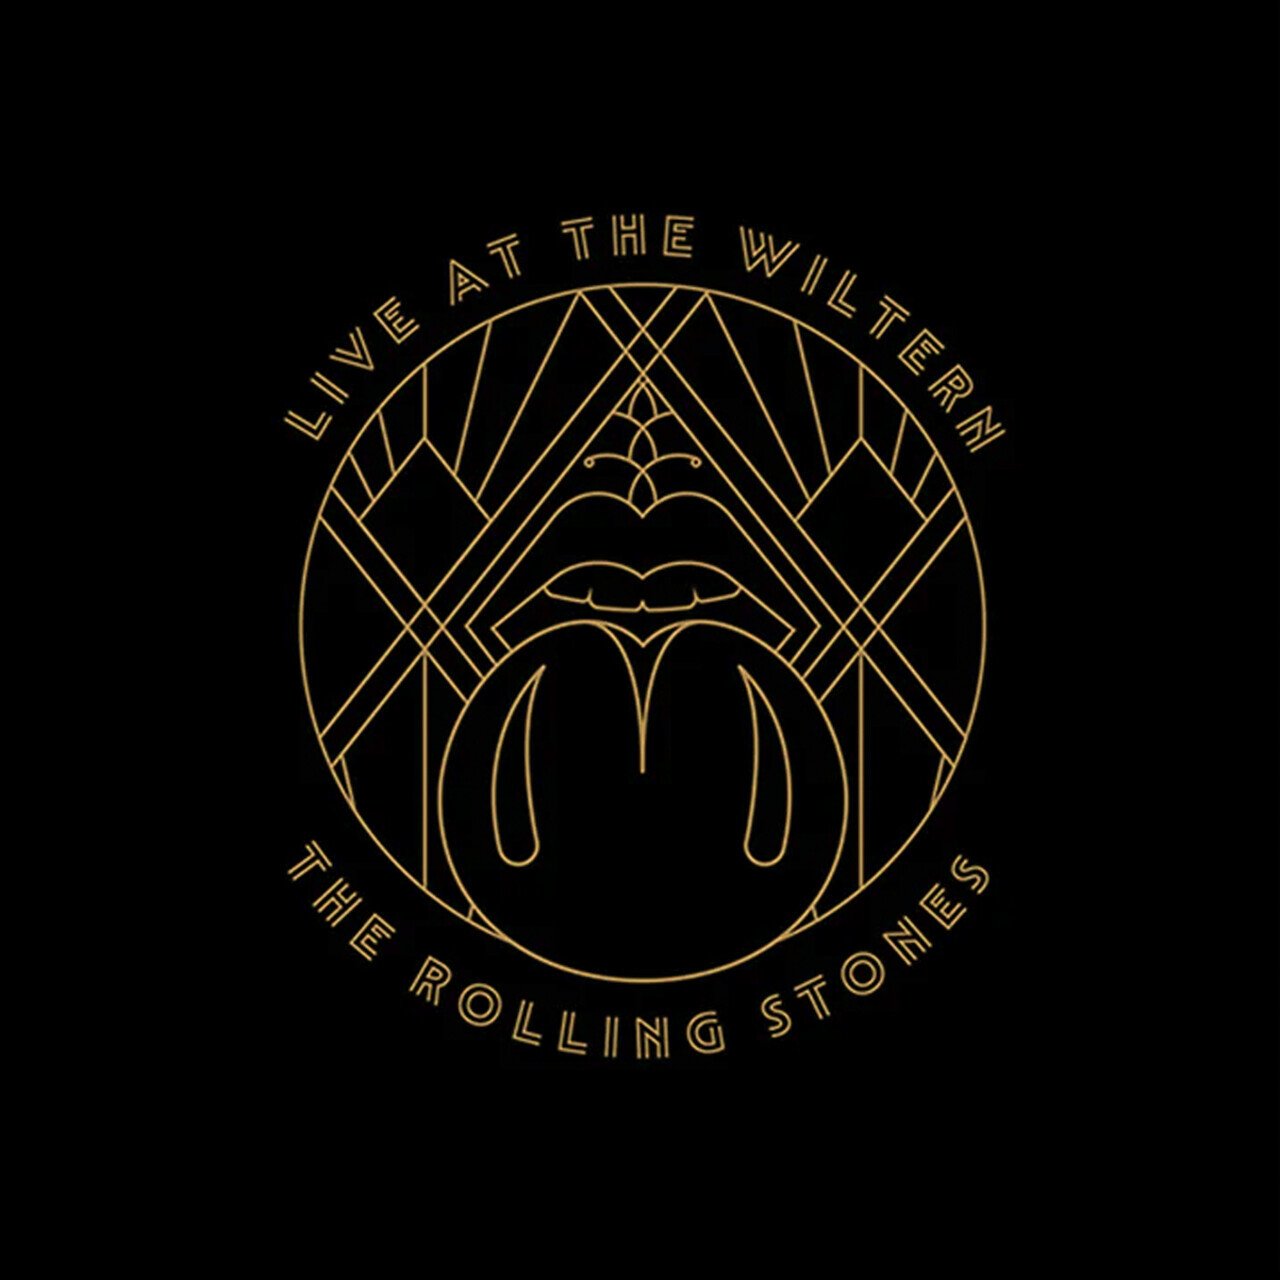 Рок Universal (Aus) Rolling Stones, The - Live At The Wiltern (Black Vinyl 3LP) акафист пресвятой богородице в честь иконы ее экономисса